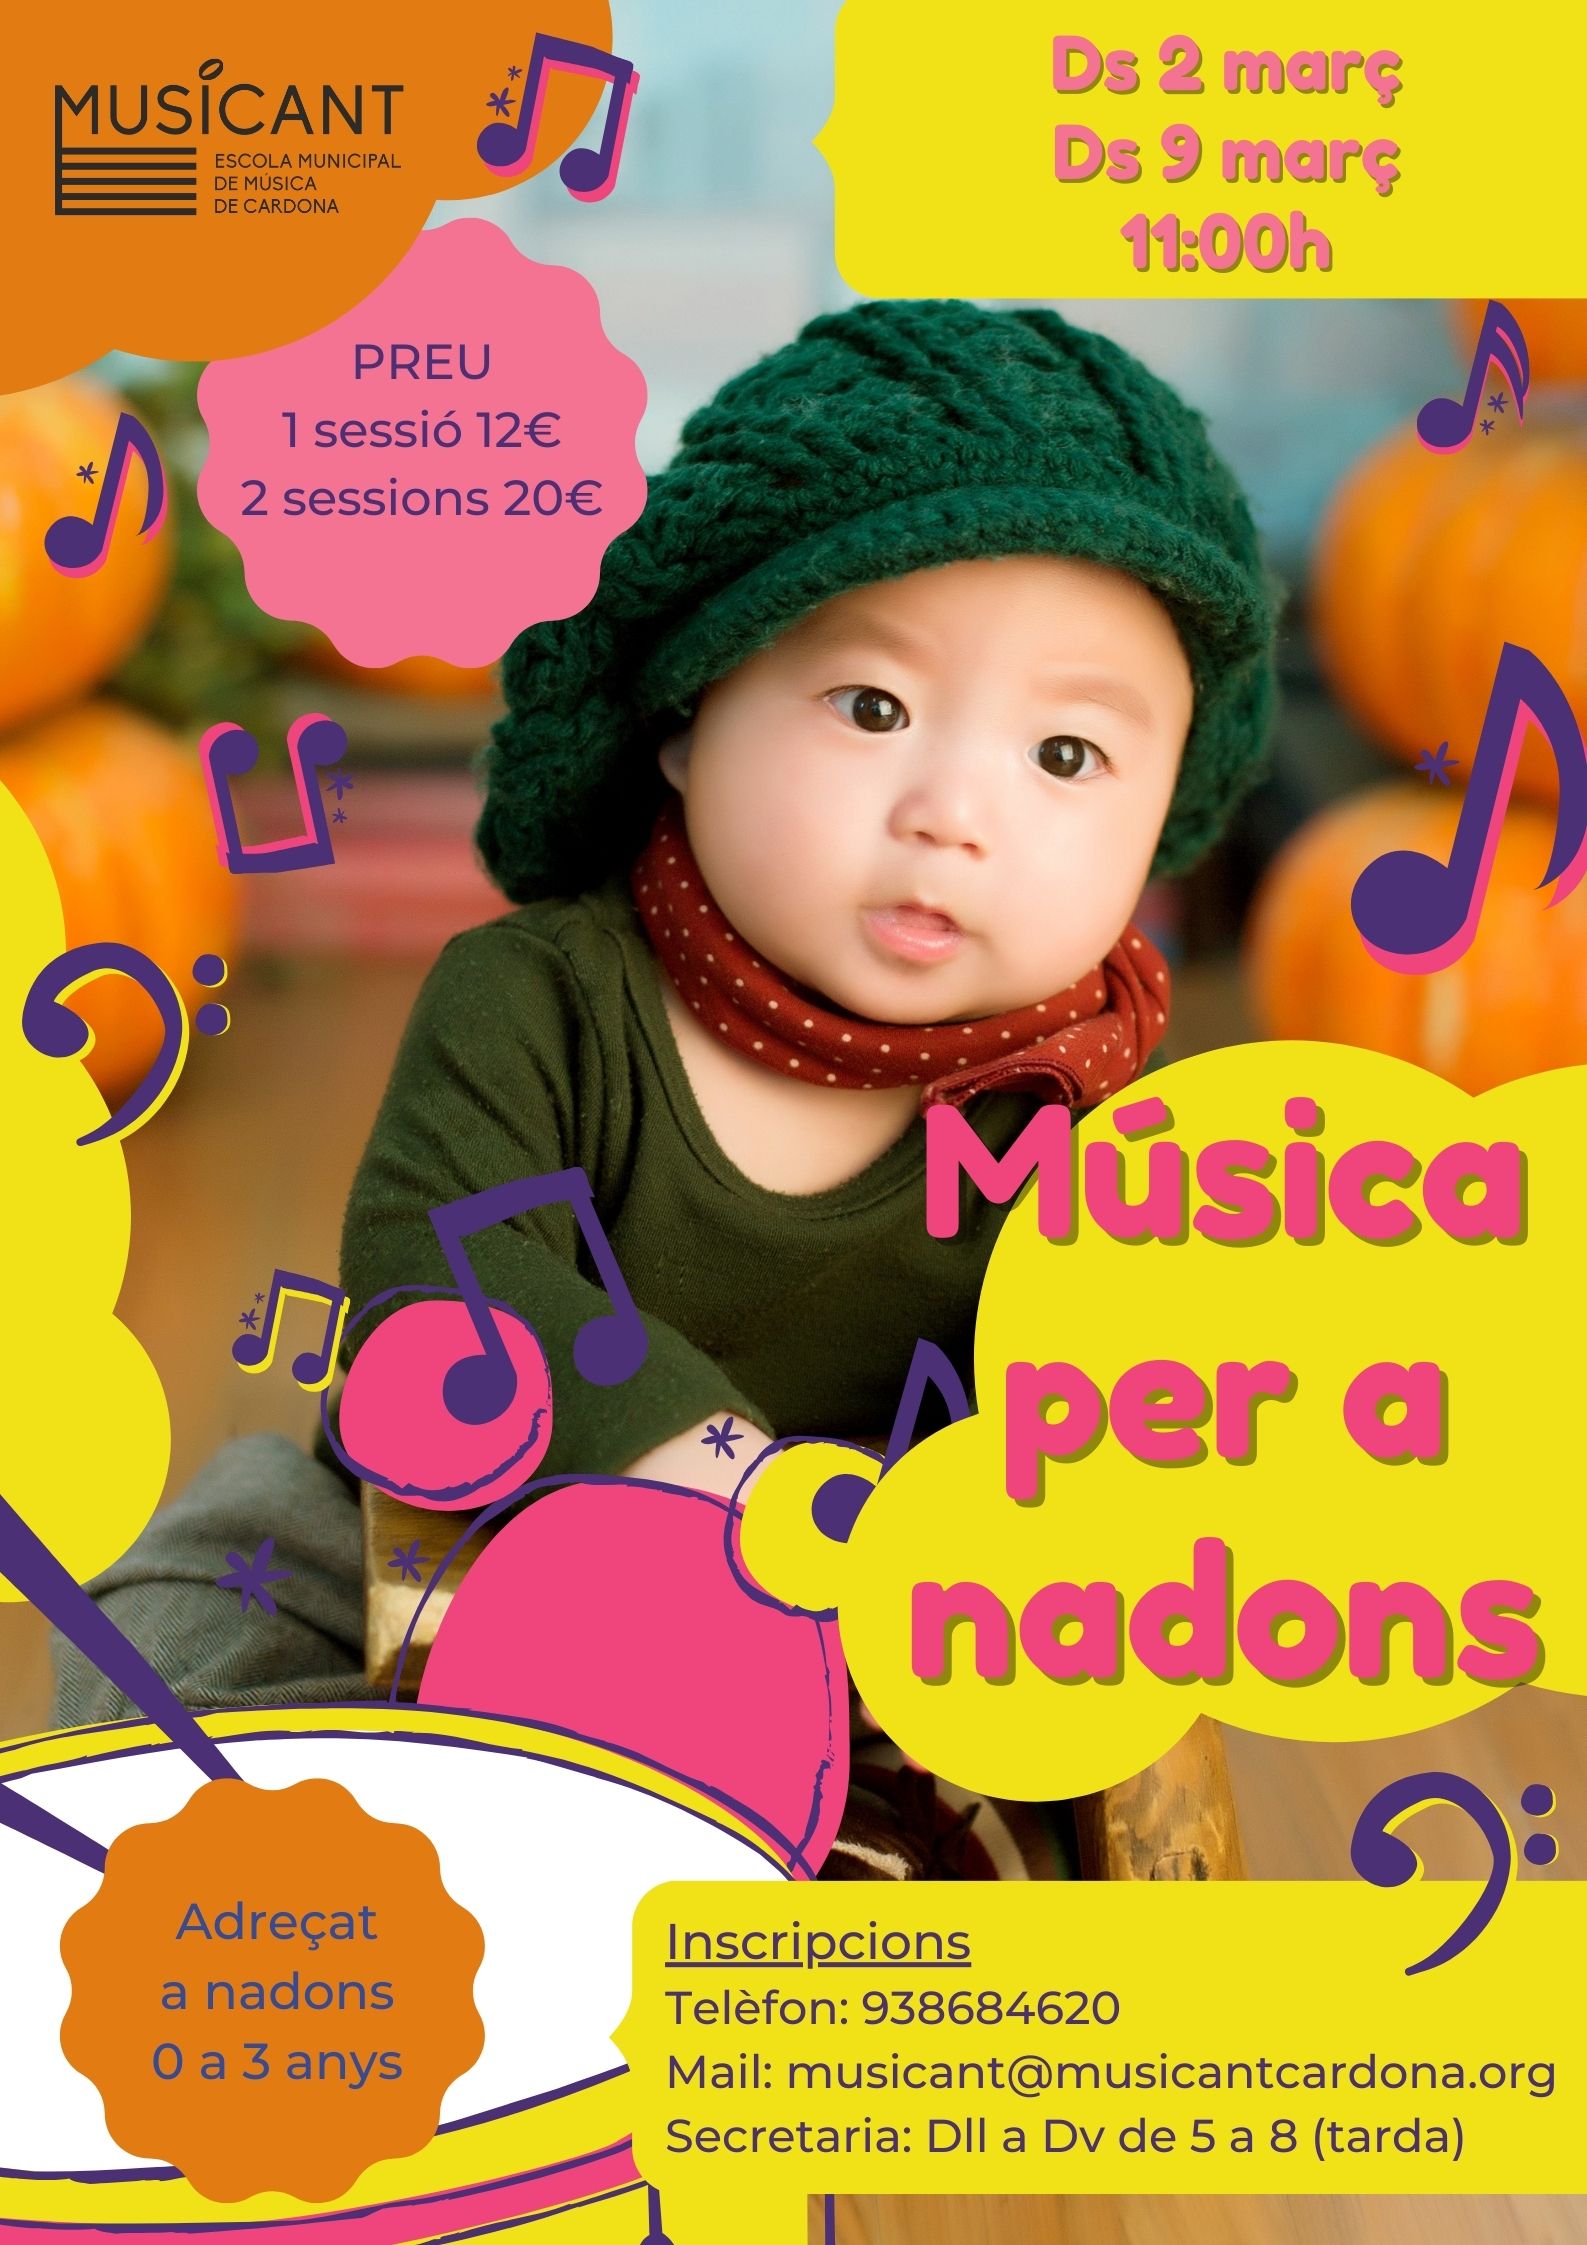 Música per a nadons a l'Escola Musicant de Cardona